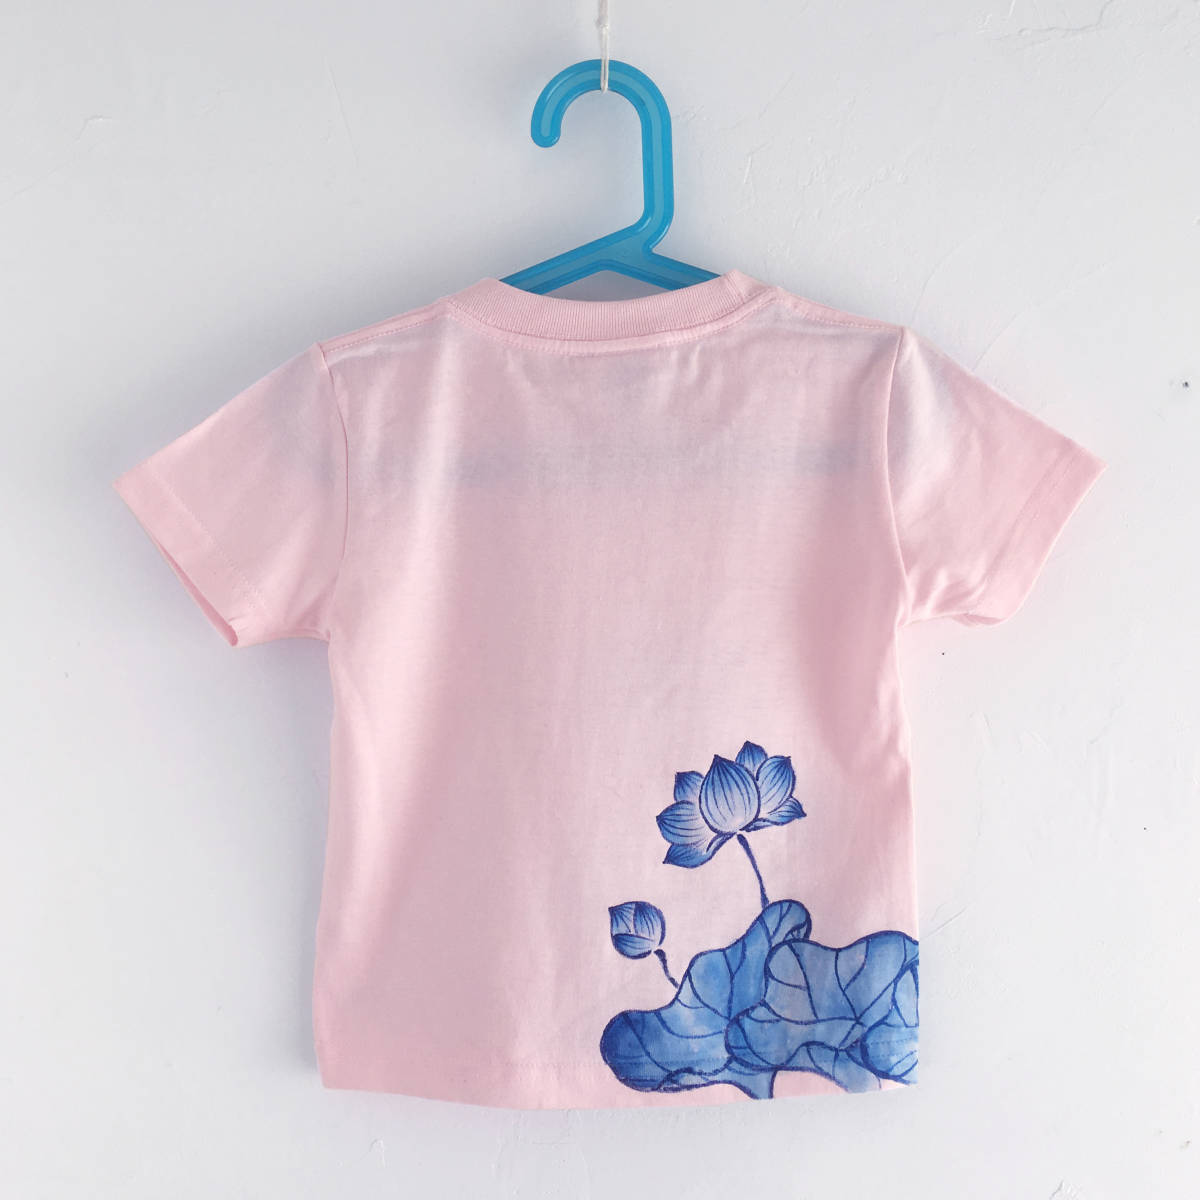 キッズ Tシャツ 90サイズ ピンク 蓮柄Tシャツ 手描きで描いた蓮の花柄Tシャツ 半袖 和柄 和風 レトロ ハンドメイド_画像2